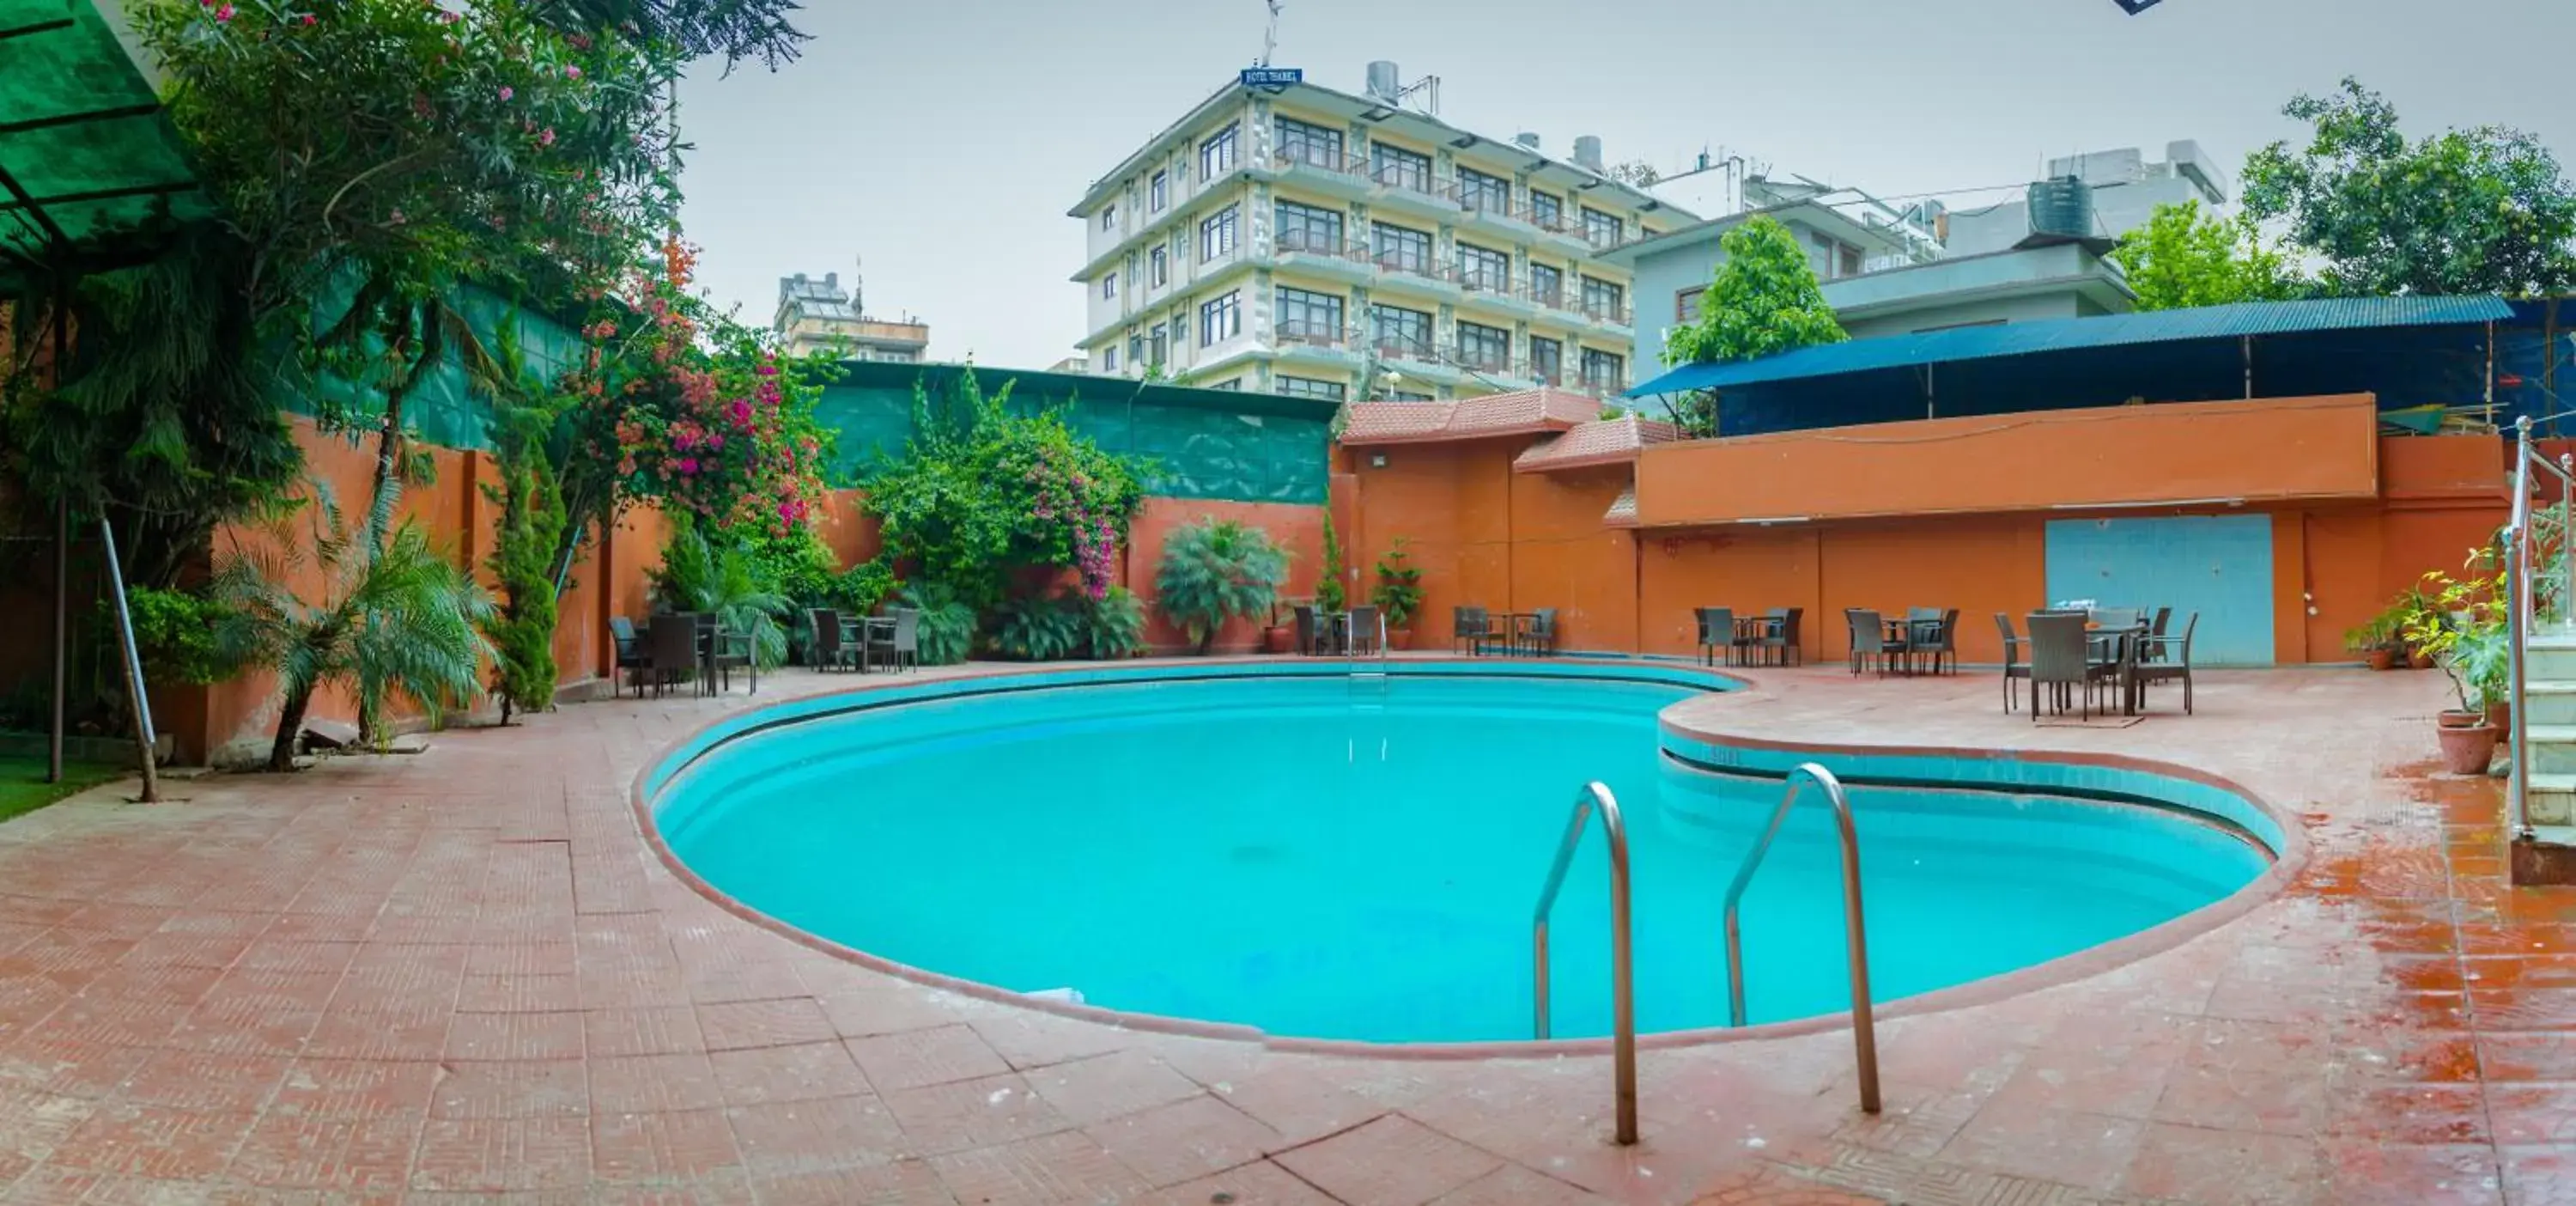 Activities, Swimming Pool in Hotel Vaishali